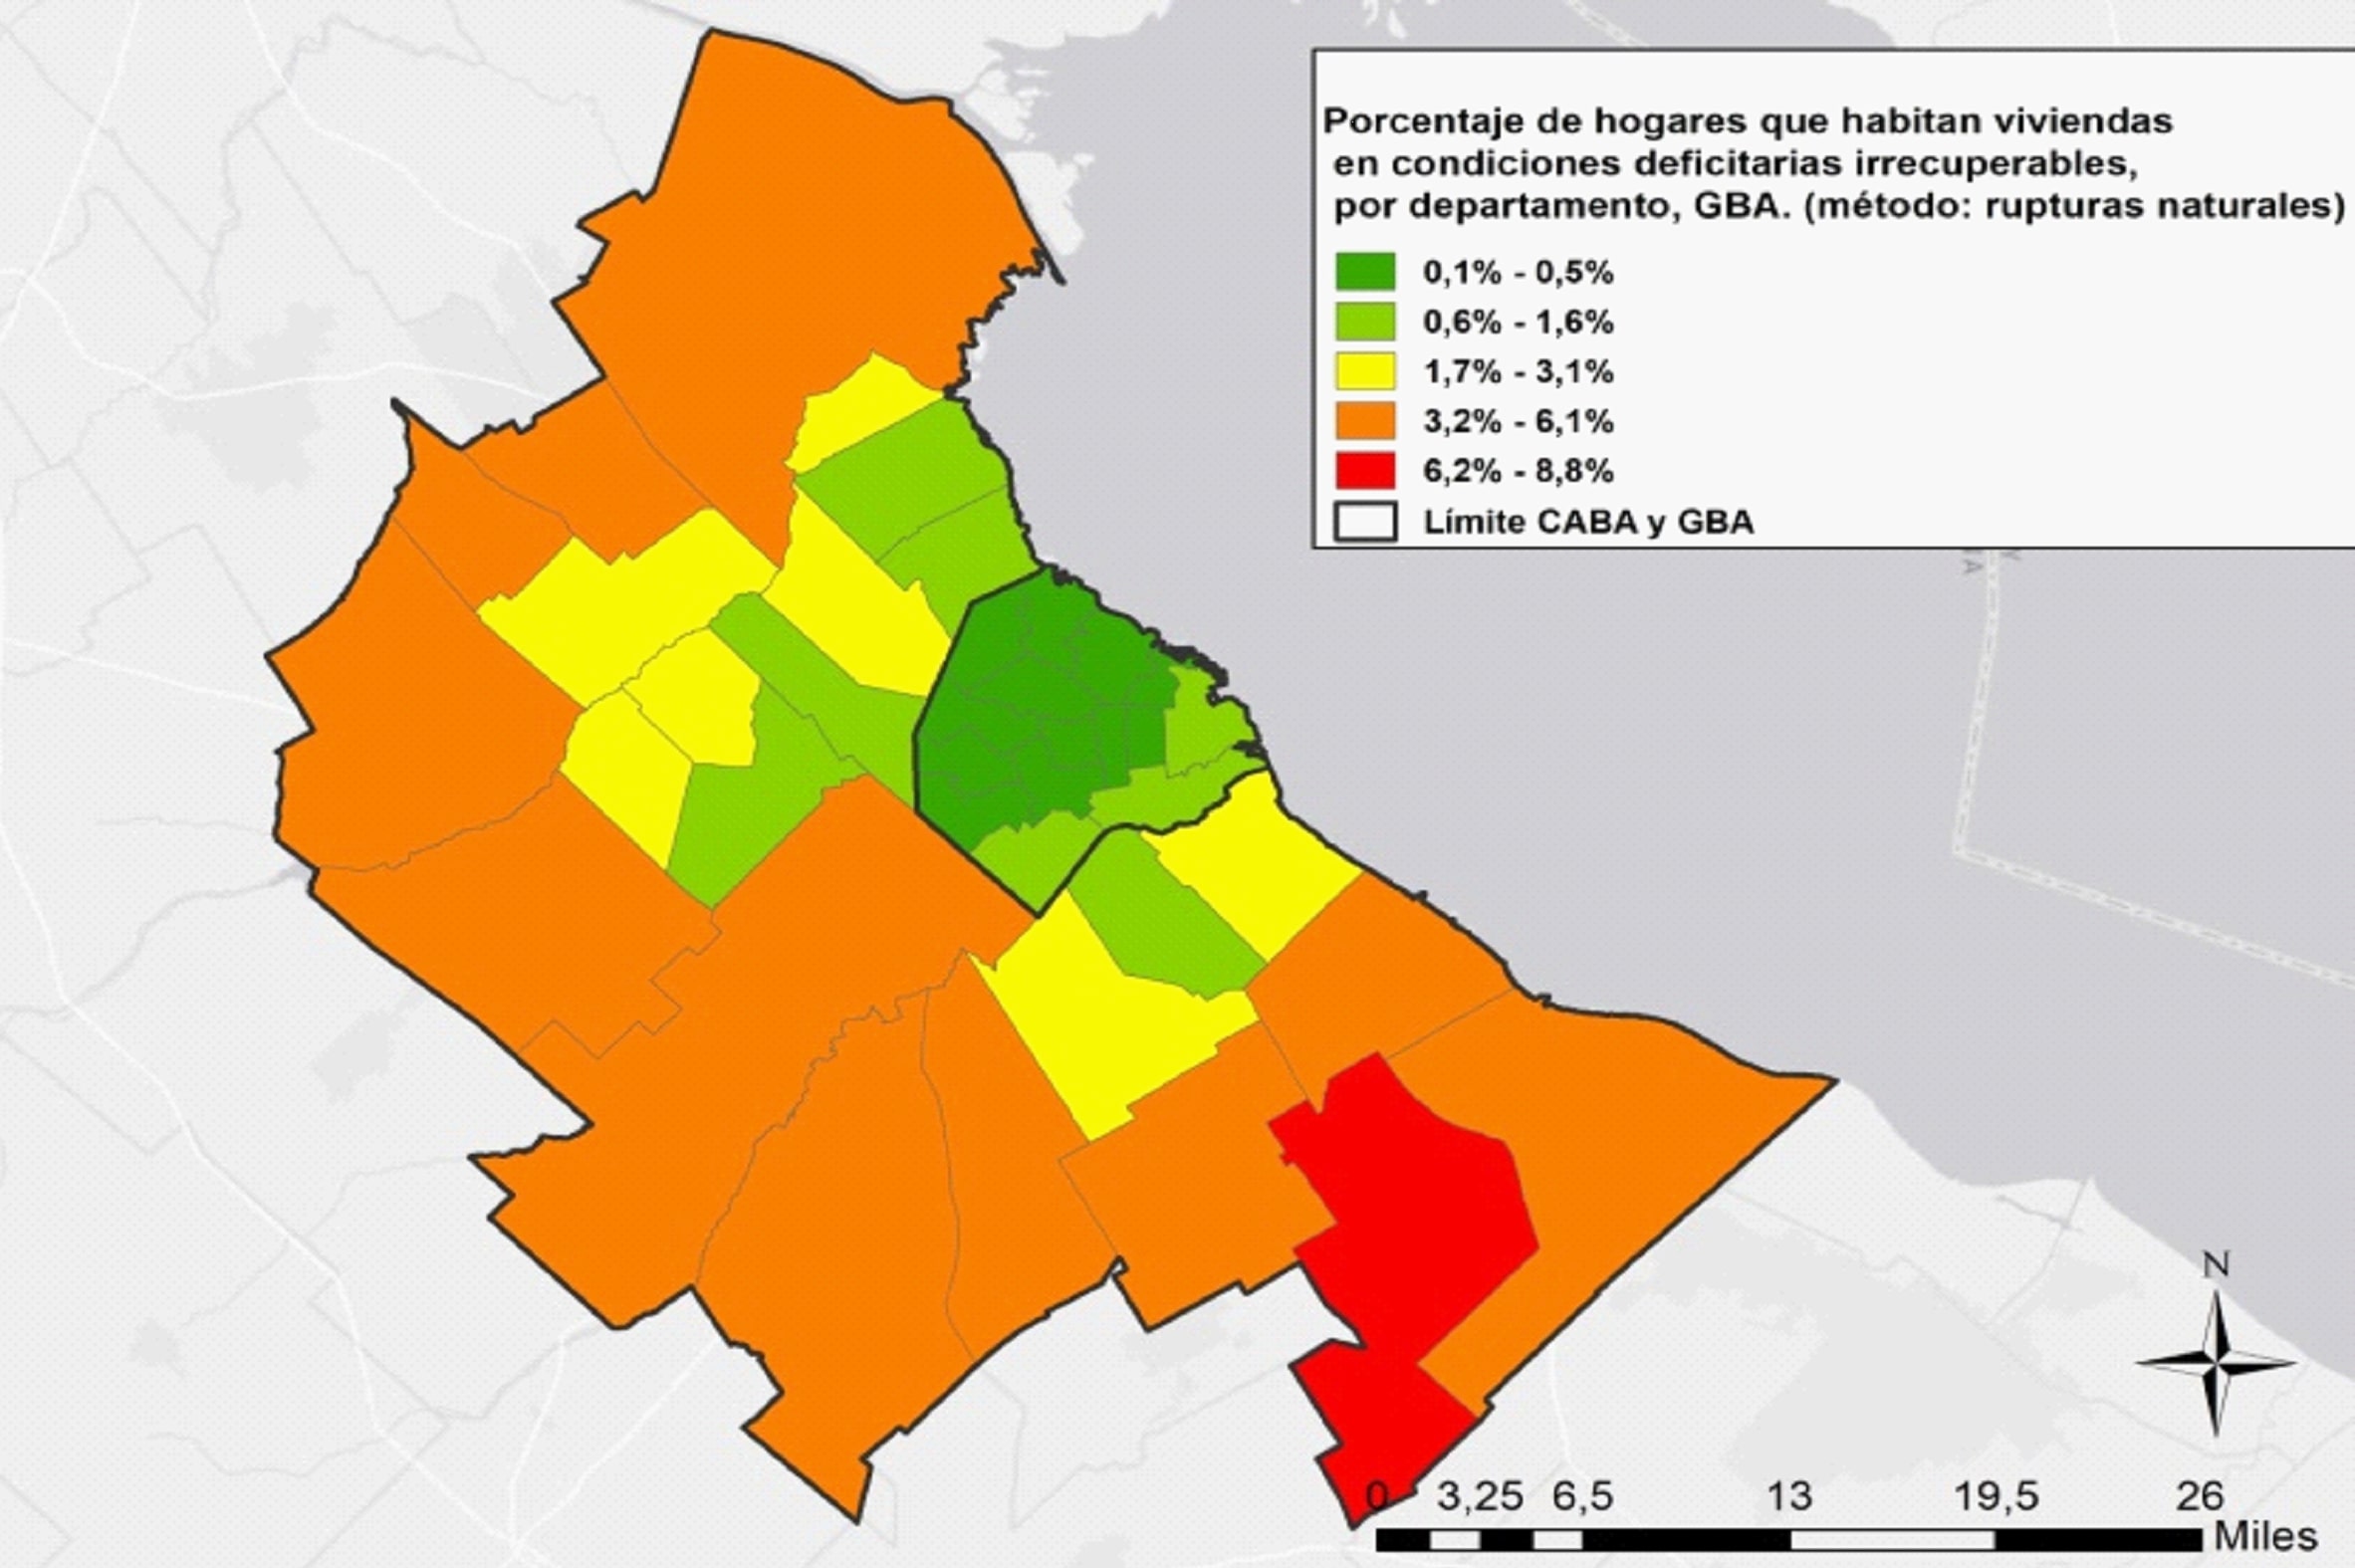 Porcentaje de hogares que habitan viviendas en condiciones deficitarias irrecuperables por departamento, GBA, 2010